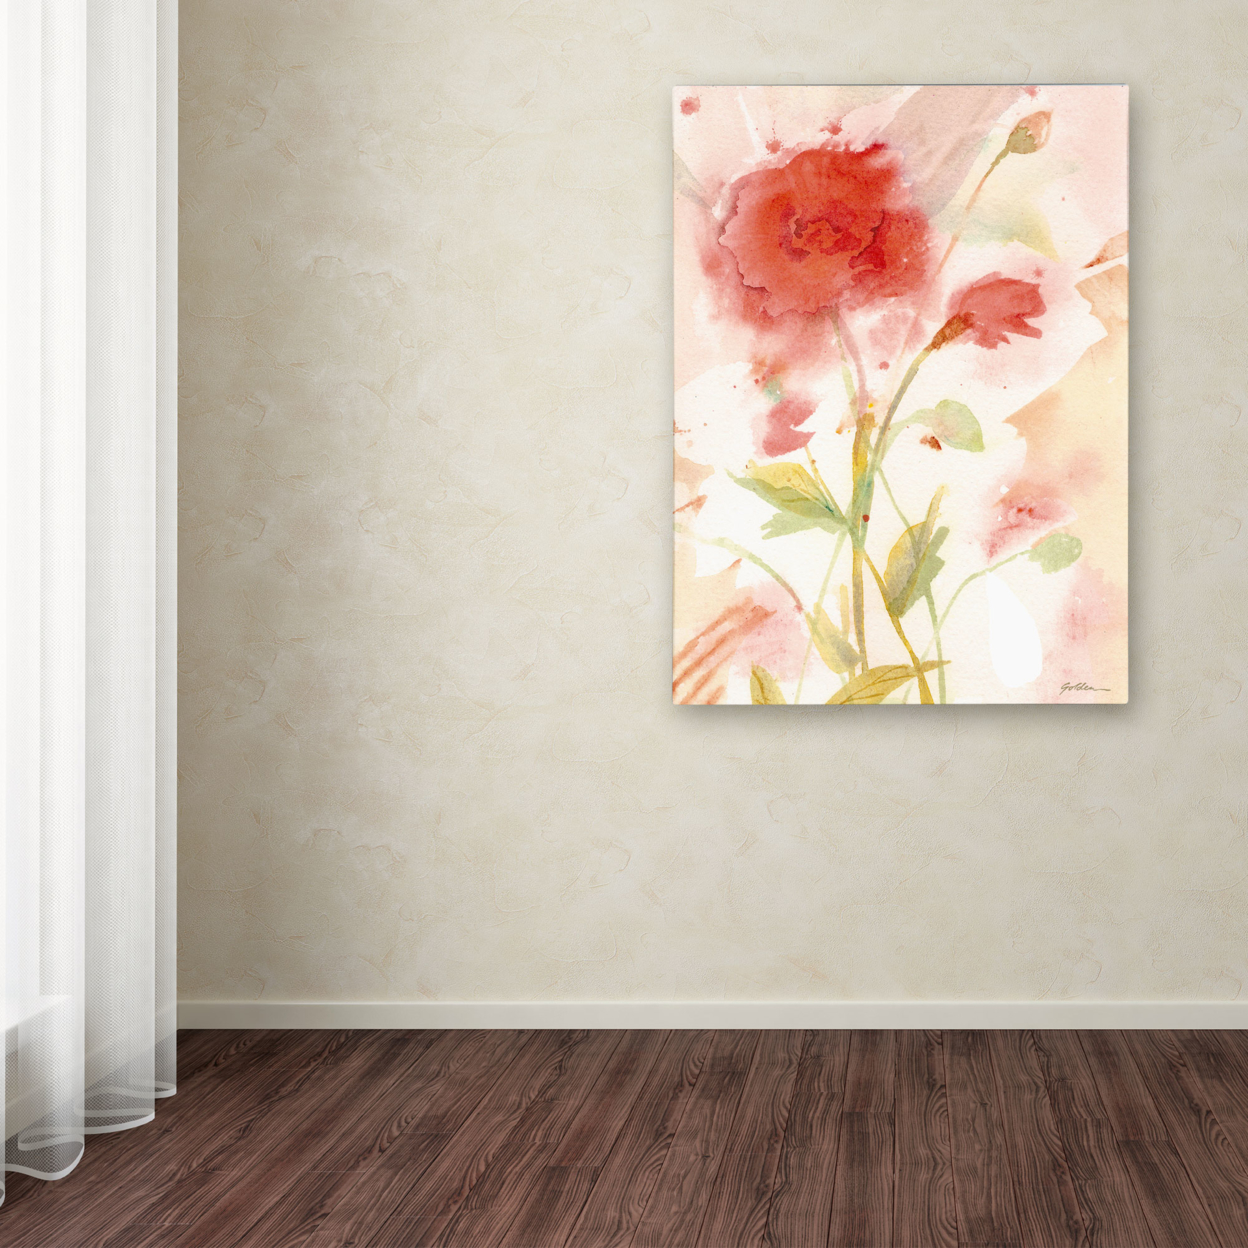 Sheila Golden 'Wild Rose' Canvas Wall Art 35 X 47